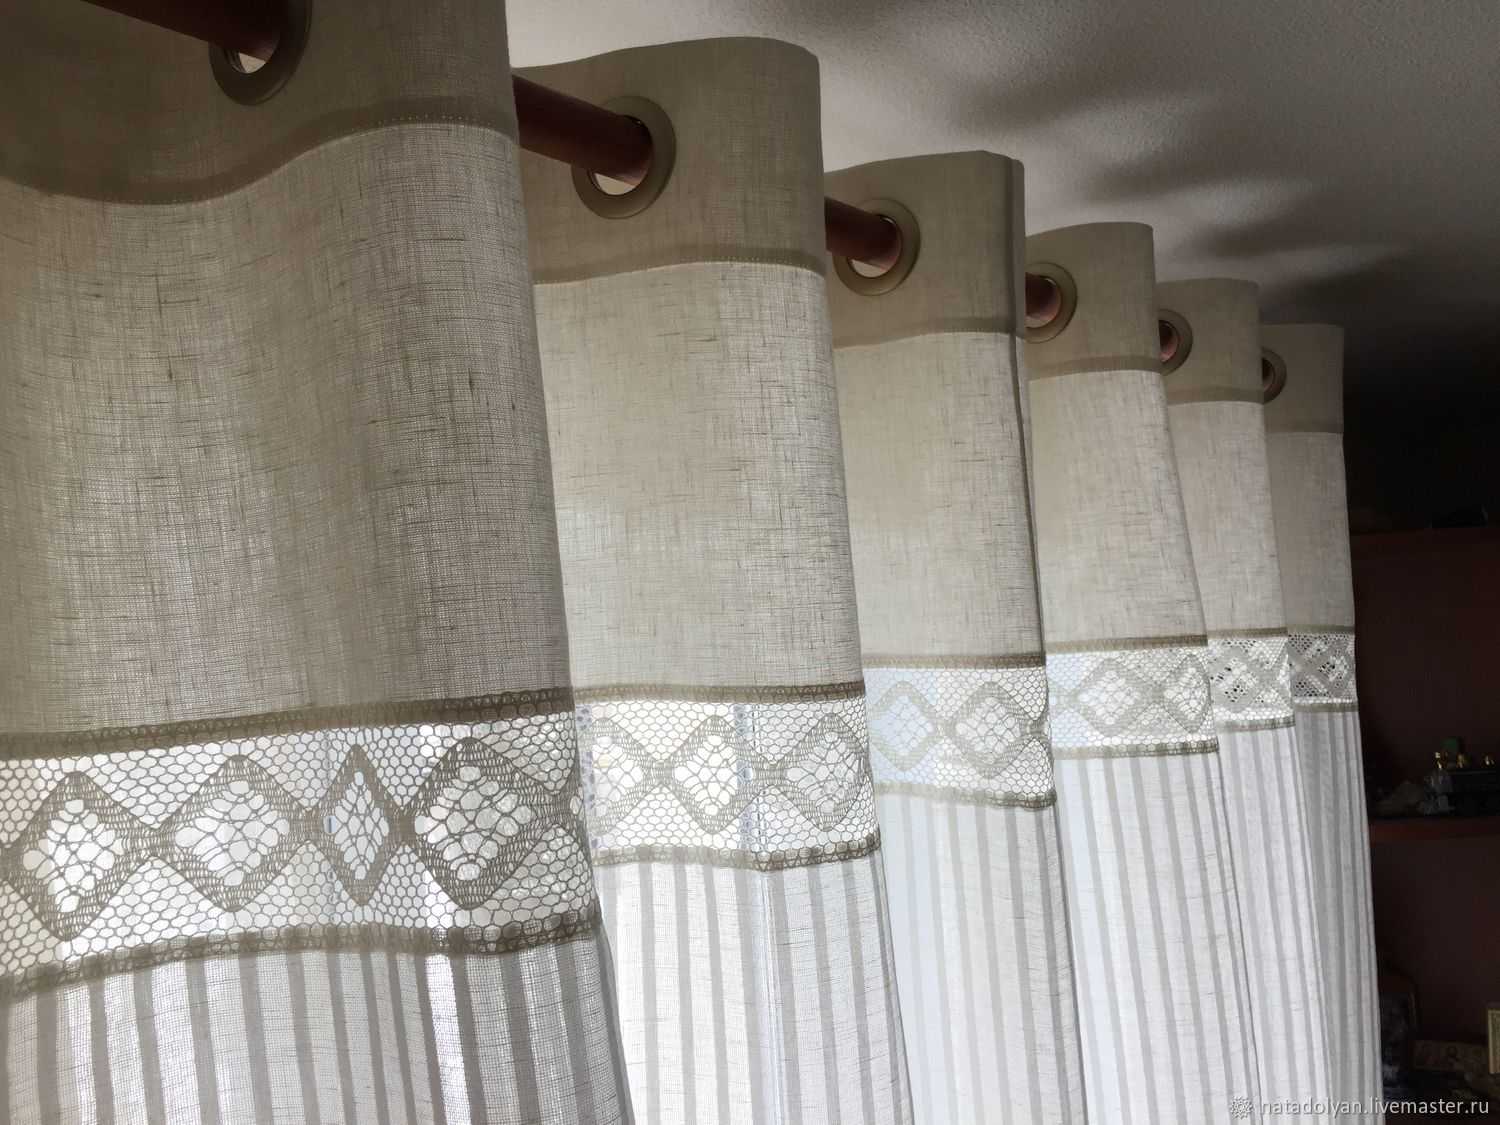 Льняные шторы: особенности и виды льняной ткани, варианты занавесок изо льна в интерьере